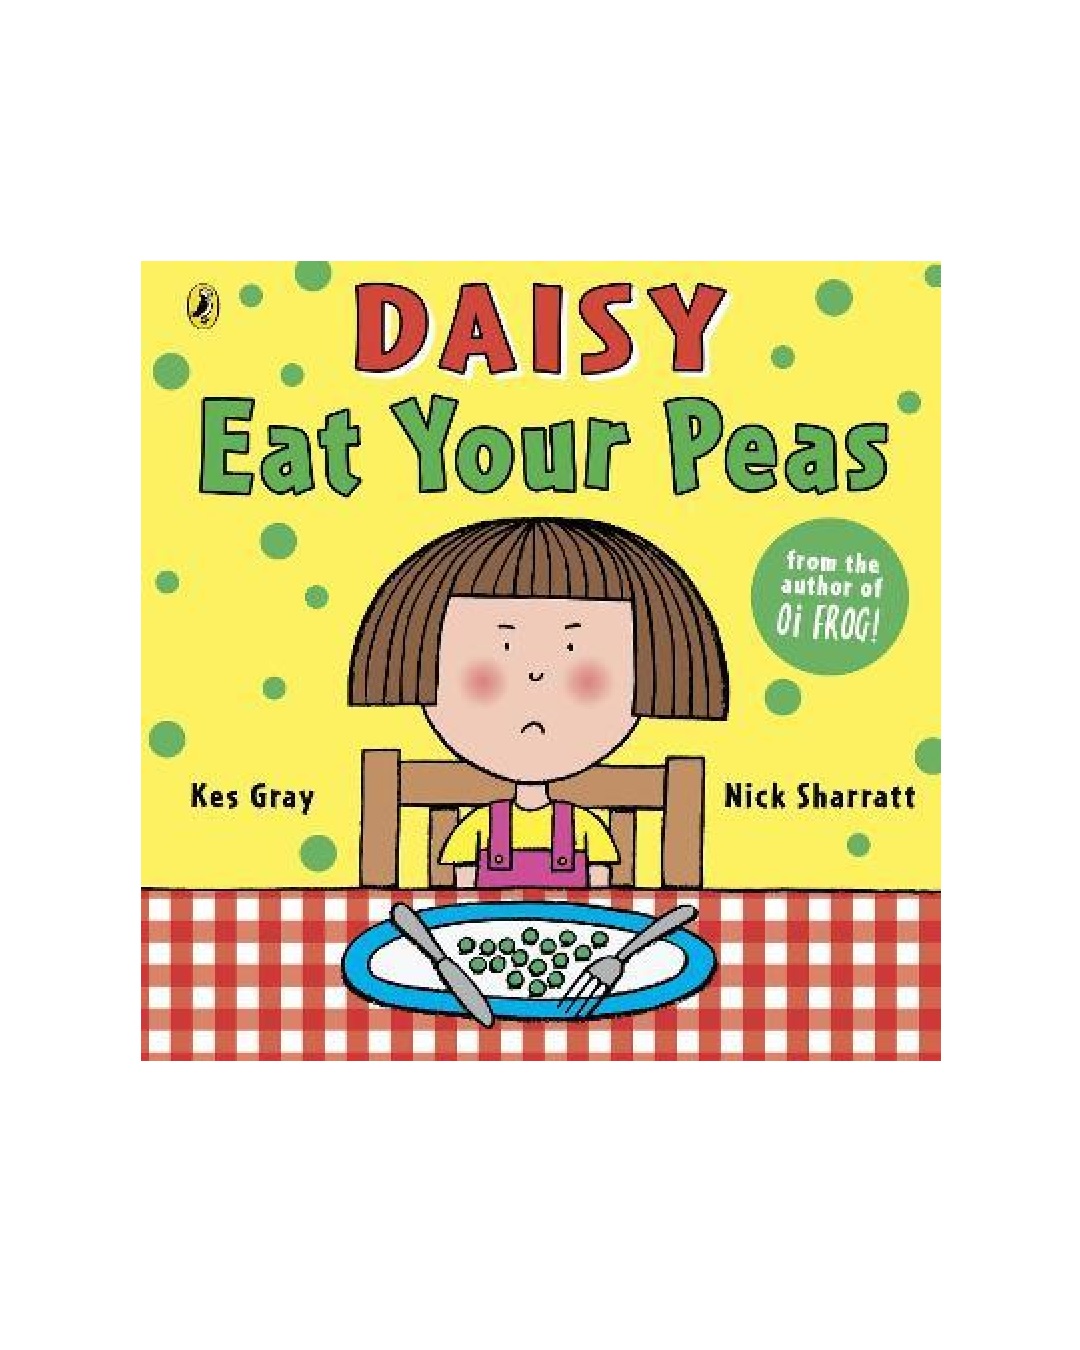 Daisy eat your peas